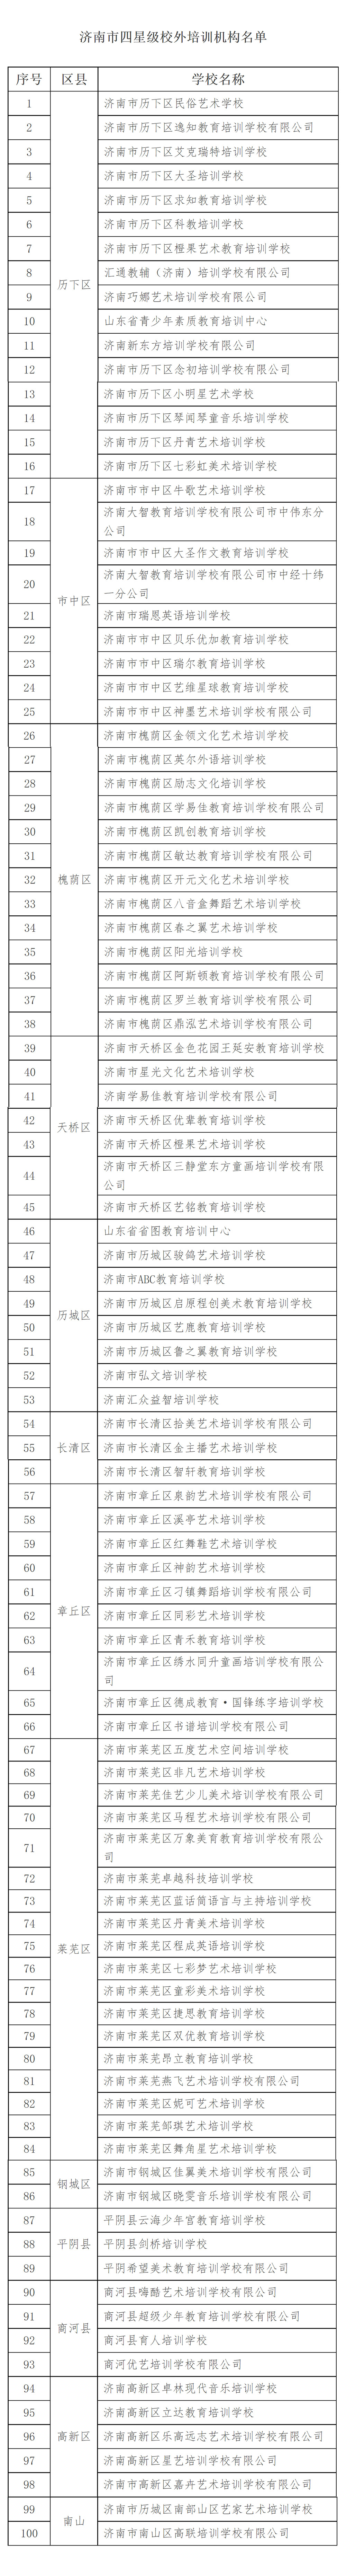 济南市五星级和四星级校外培训机构名单公示(图2)